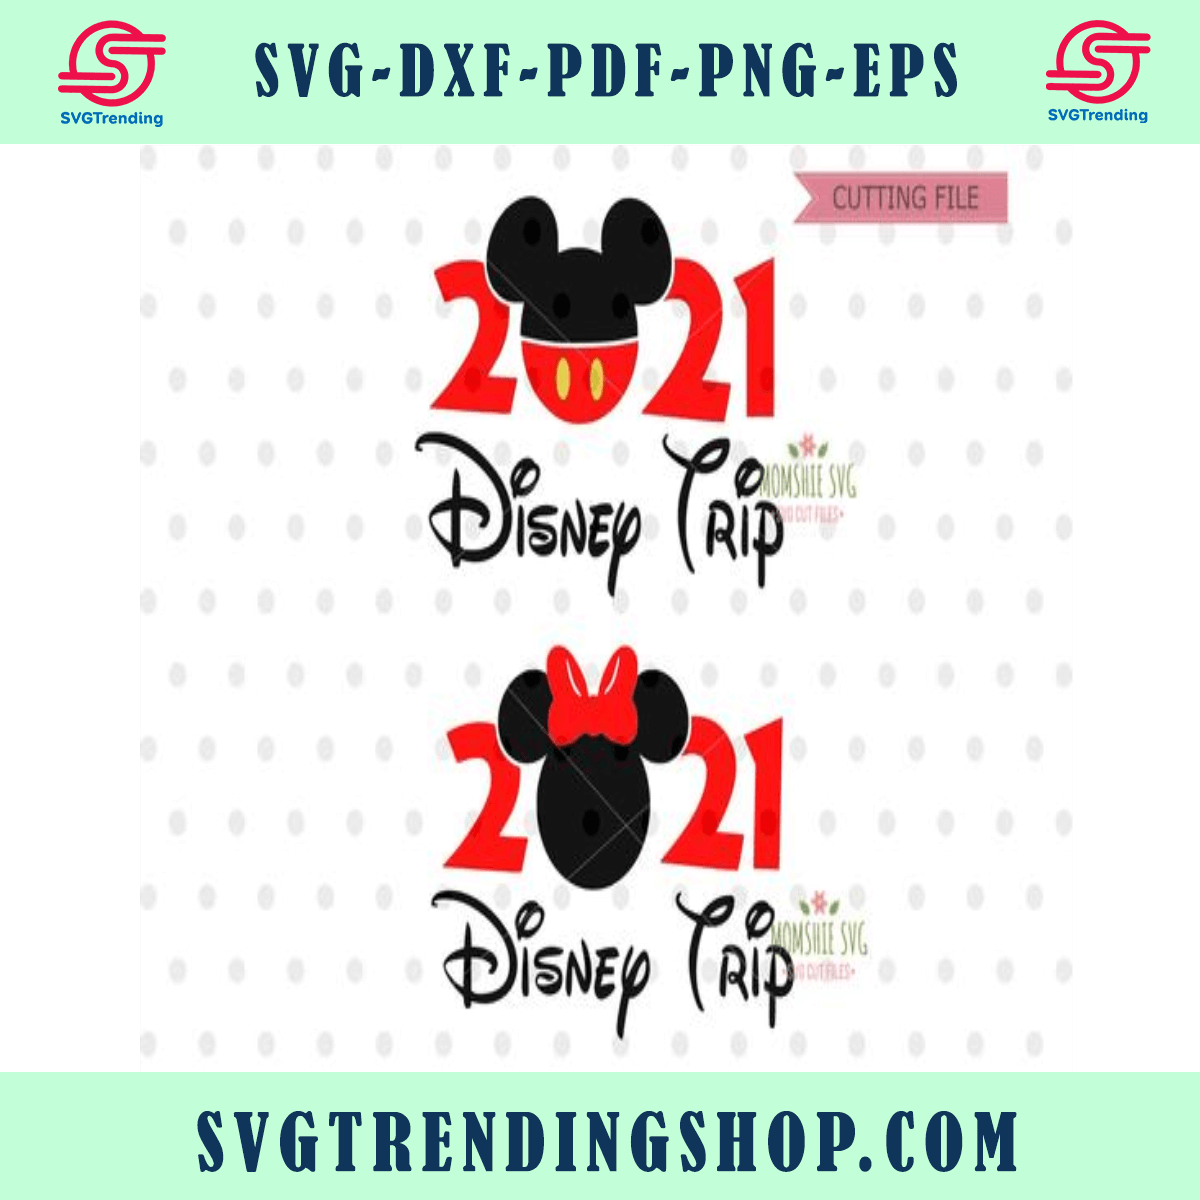 Disney Trip Svg 2021 Disney Trip Svg Disney Goals Png Etsy Uk Images